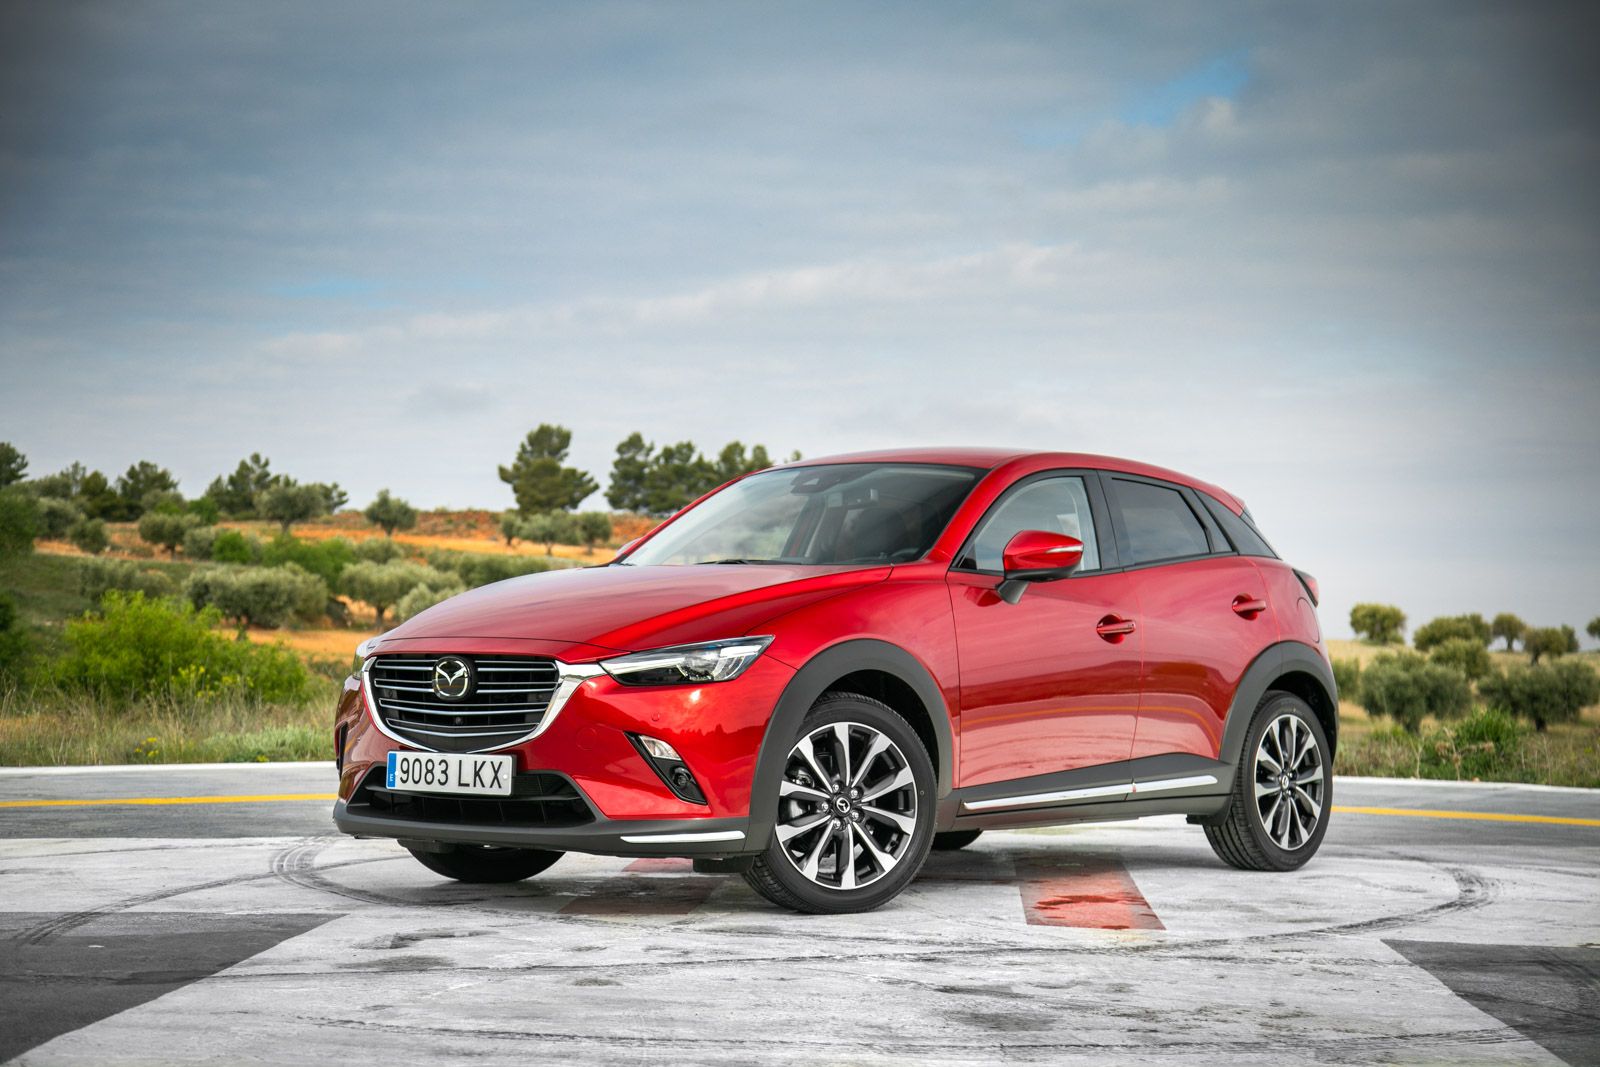 Fotos Mazda CX3 / Galerías de imágenes oficiales y propias / Motor.es